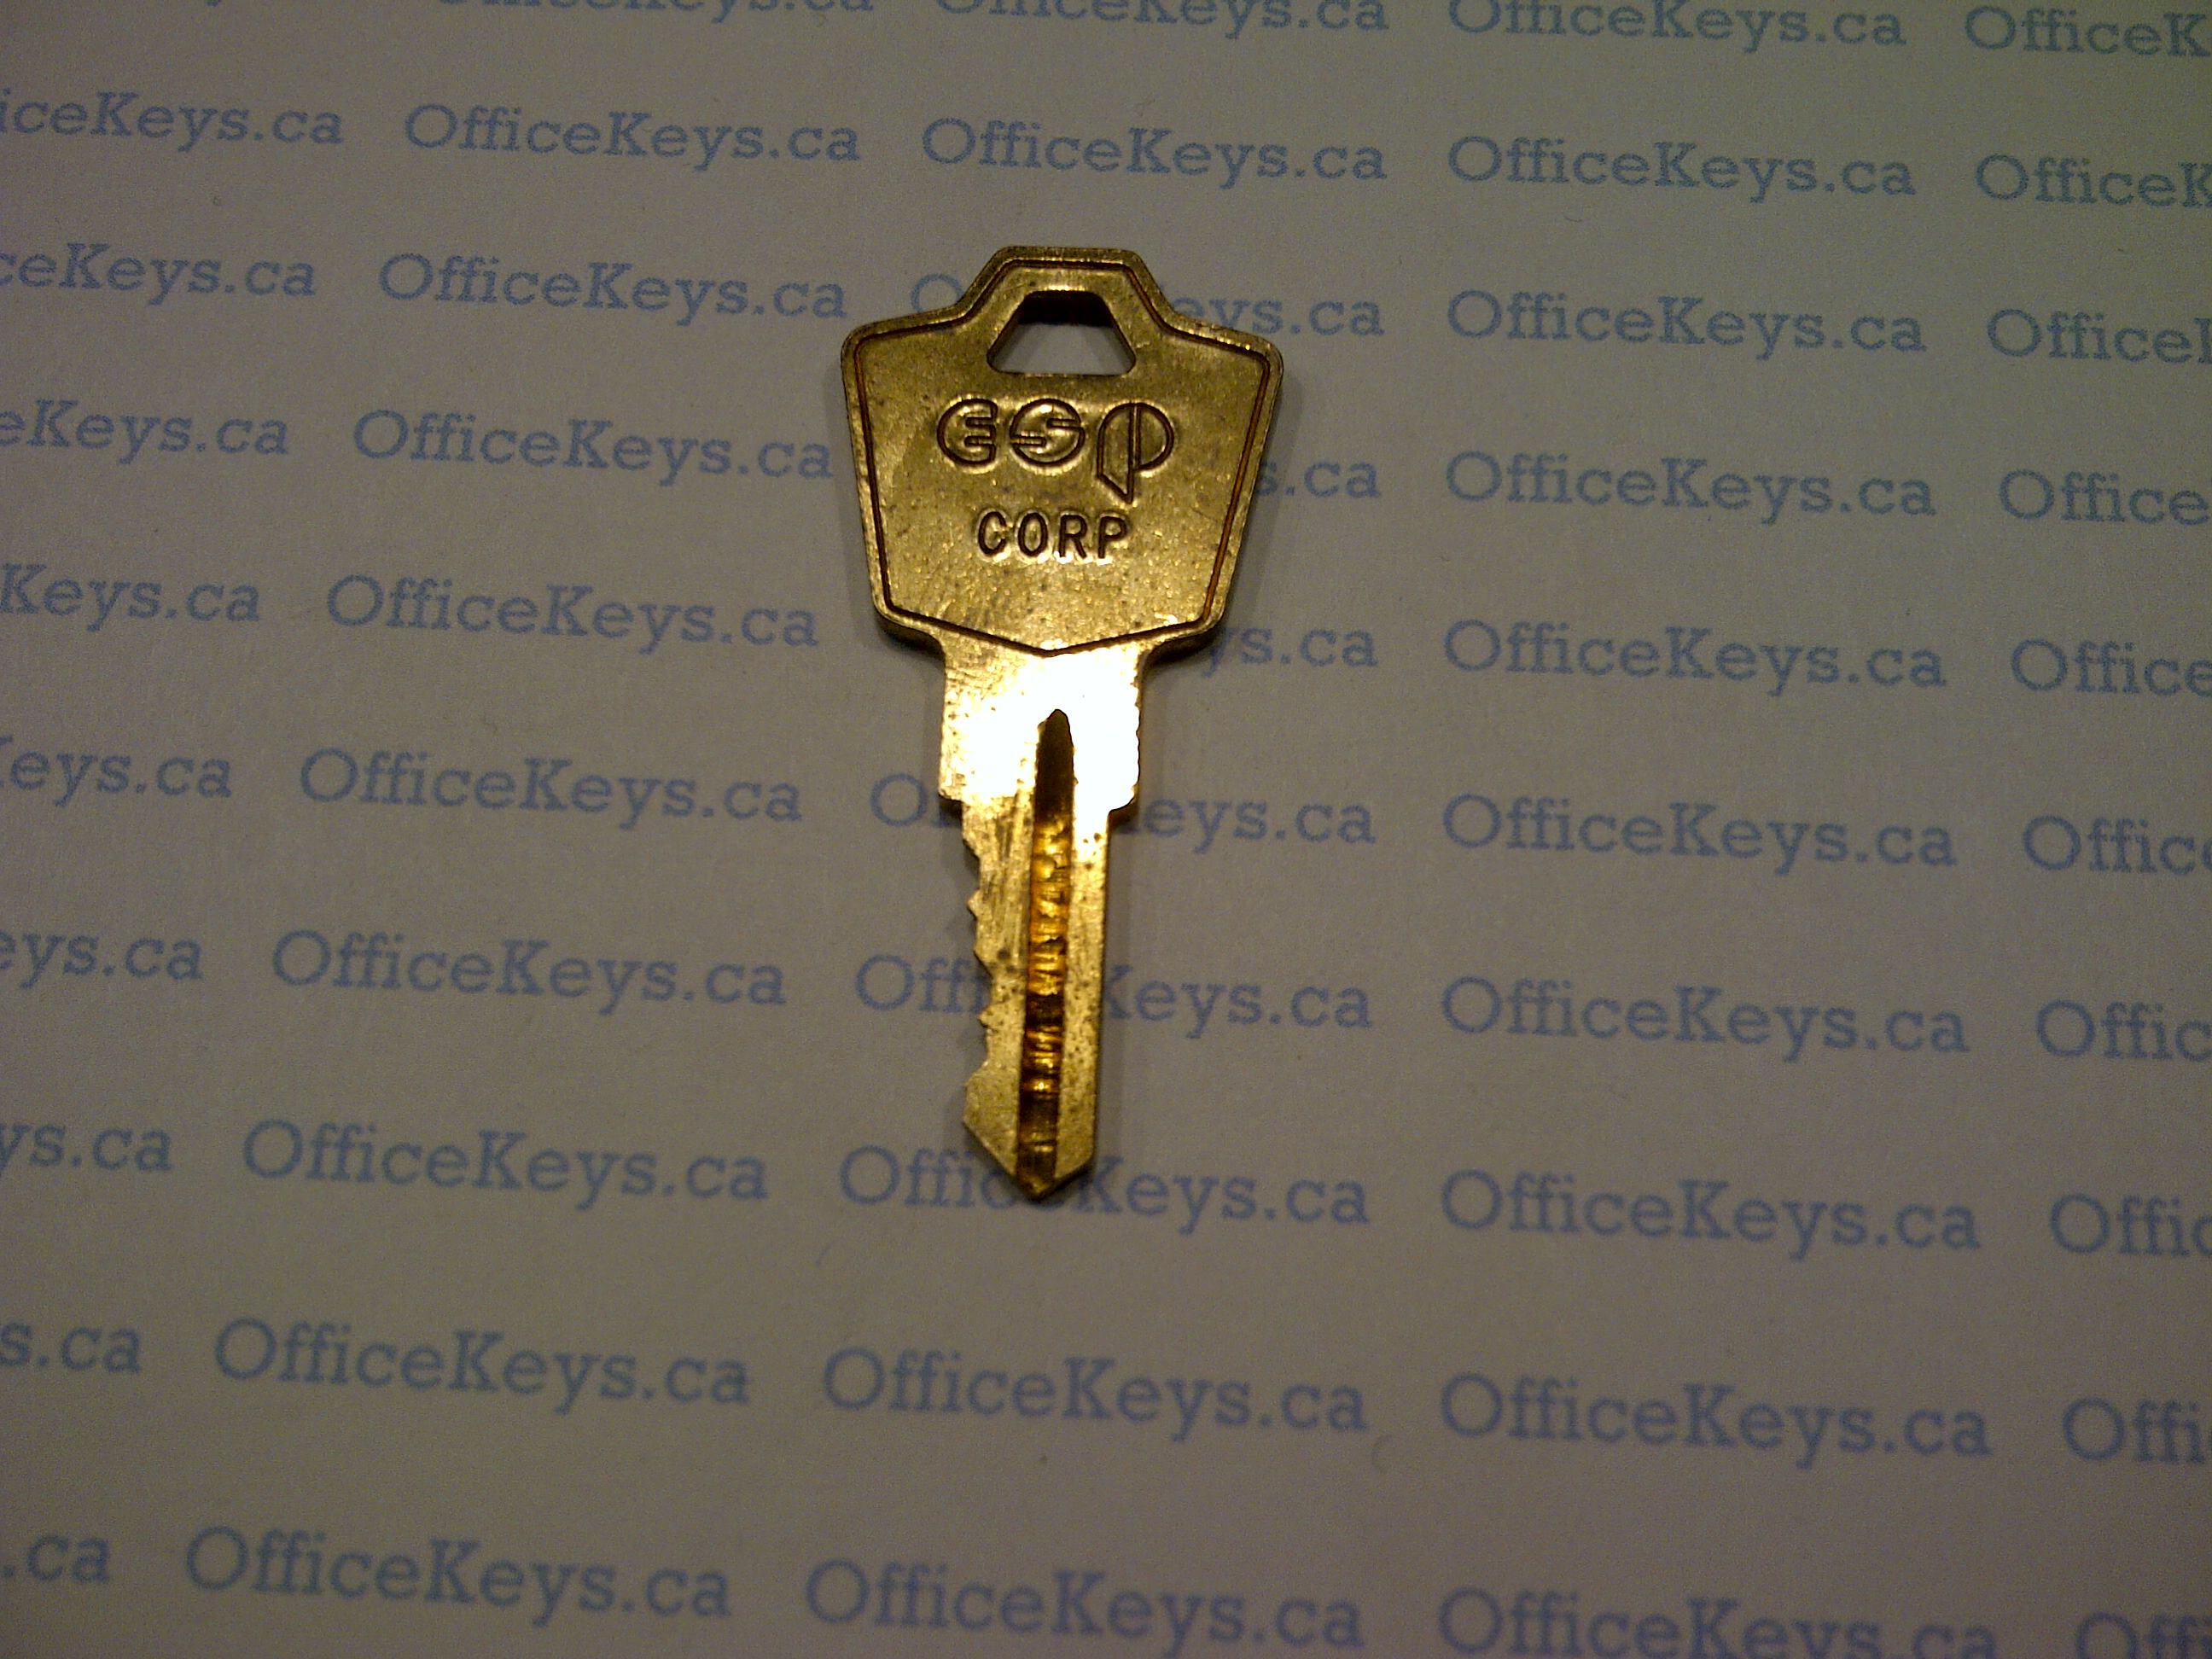 Hon 101e 225e Series Code Keys Officekeys Caofficekeys Ca